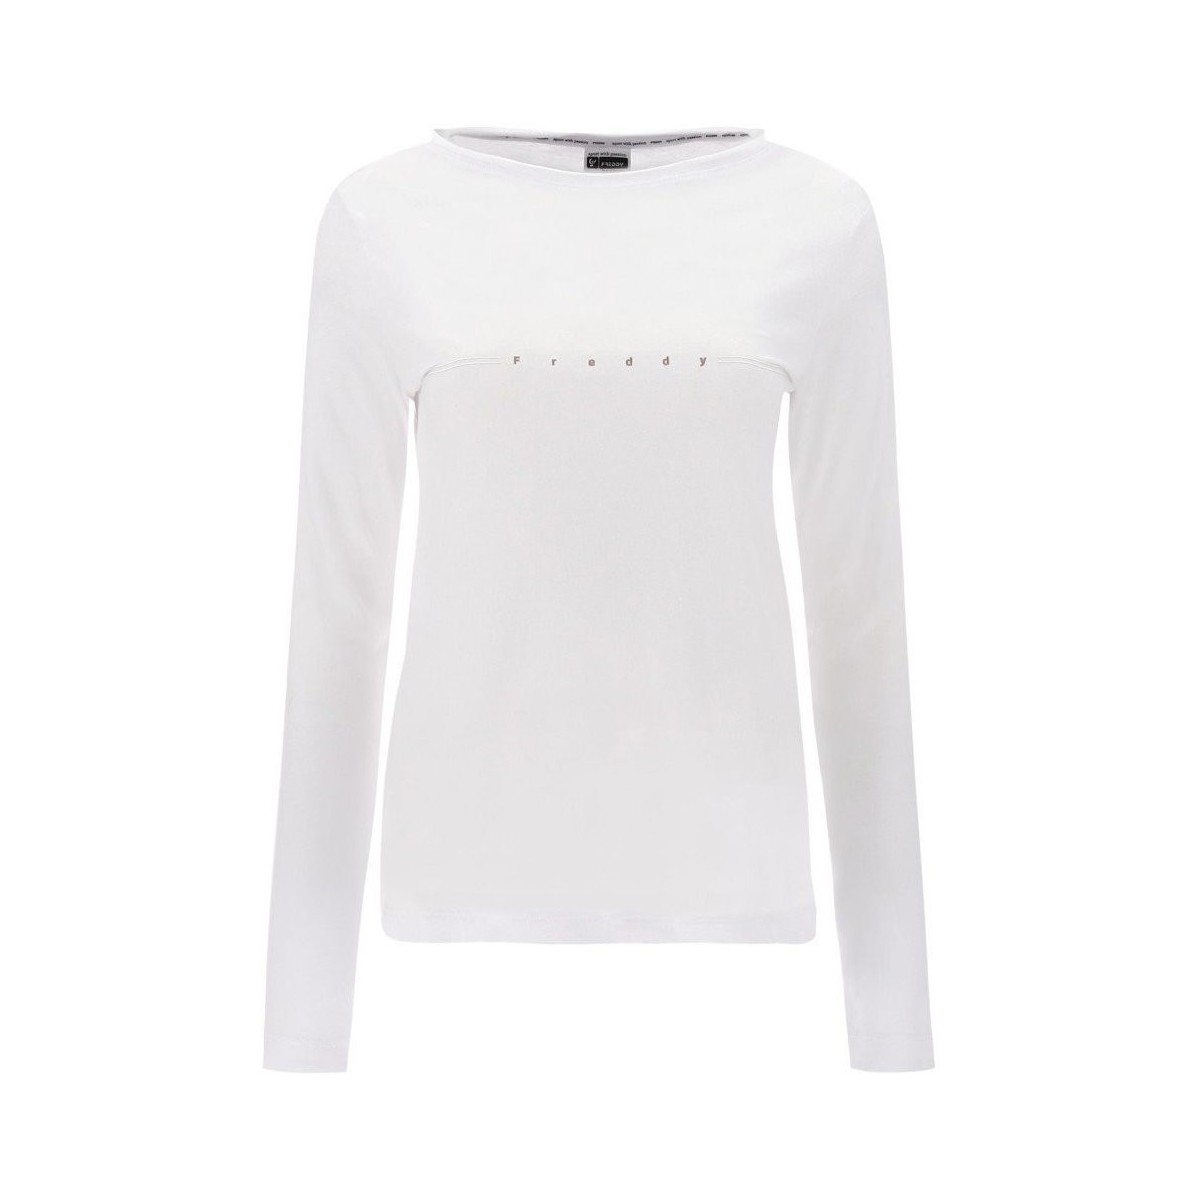 Abbigliamento Donna T-shirts a maniche lunghe Freddy T-shirt Donna Stampa Olografica Bianco